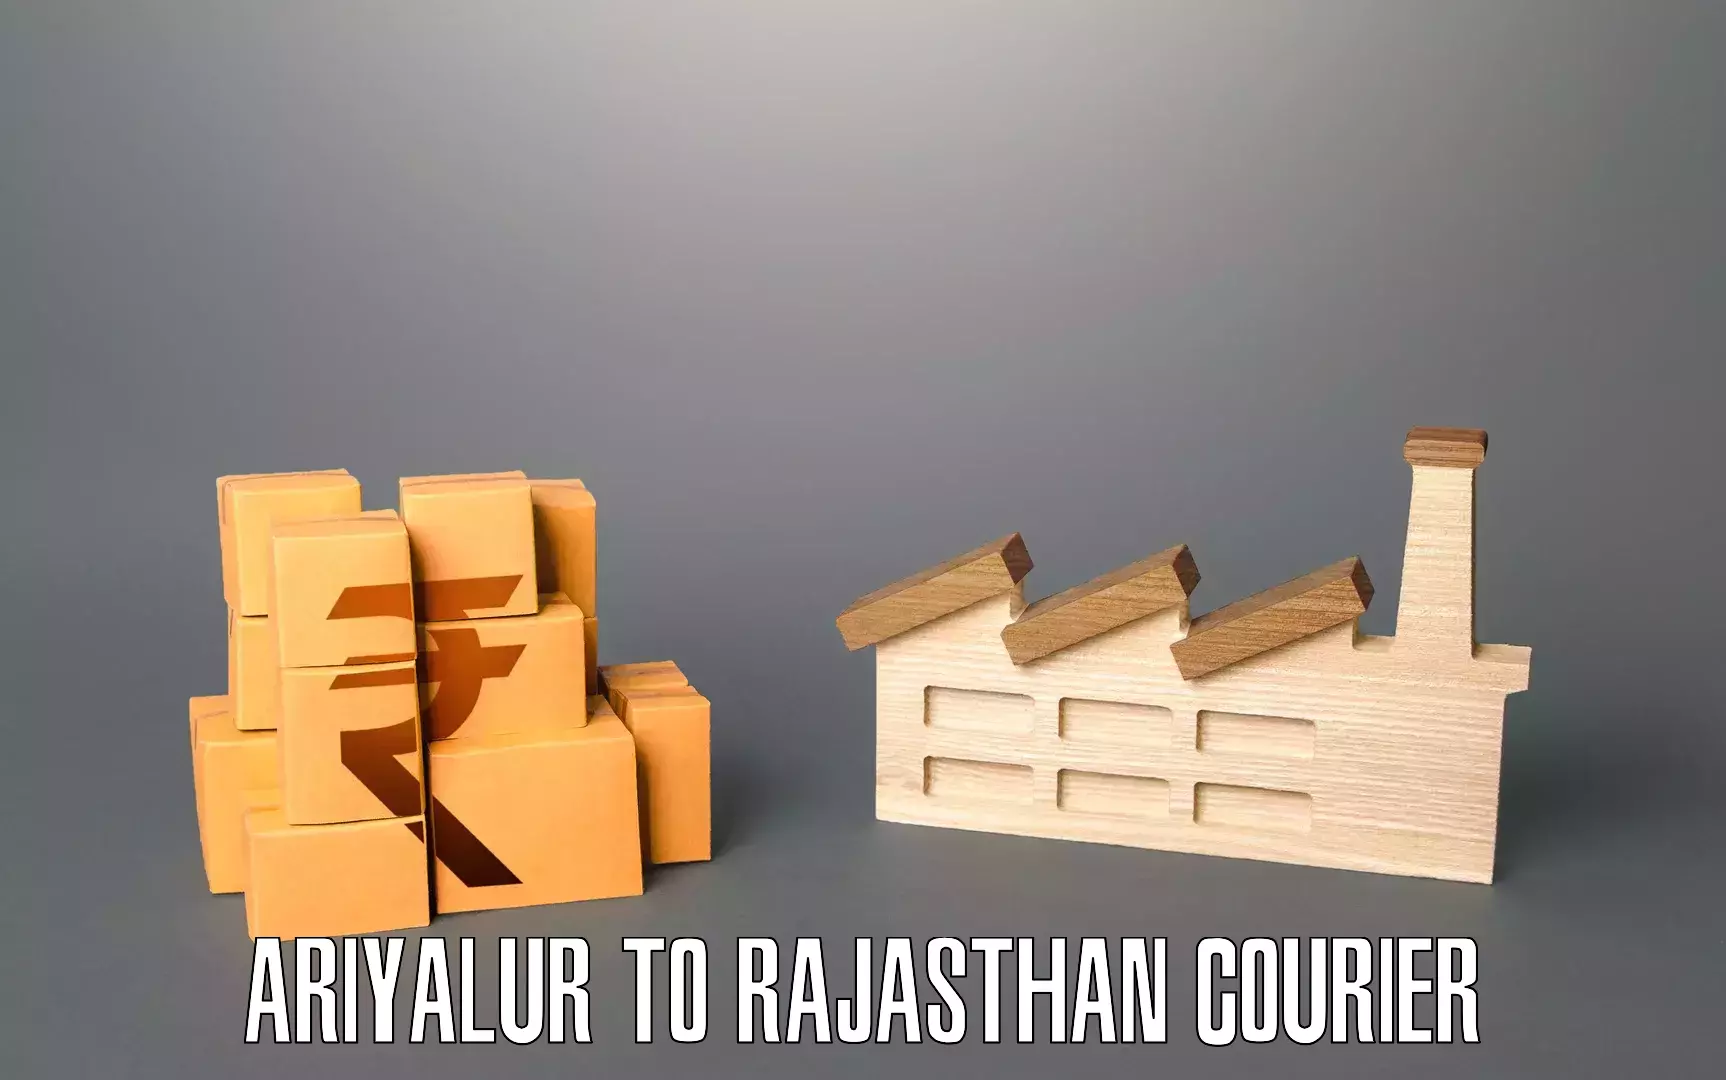 Furniture transport experts Ariyalur to Yathalakunta